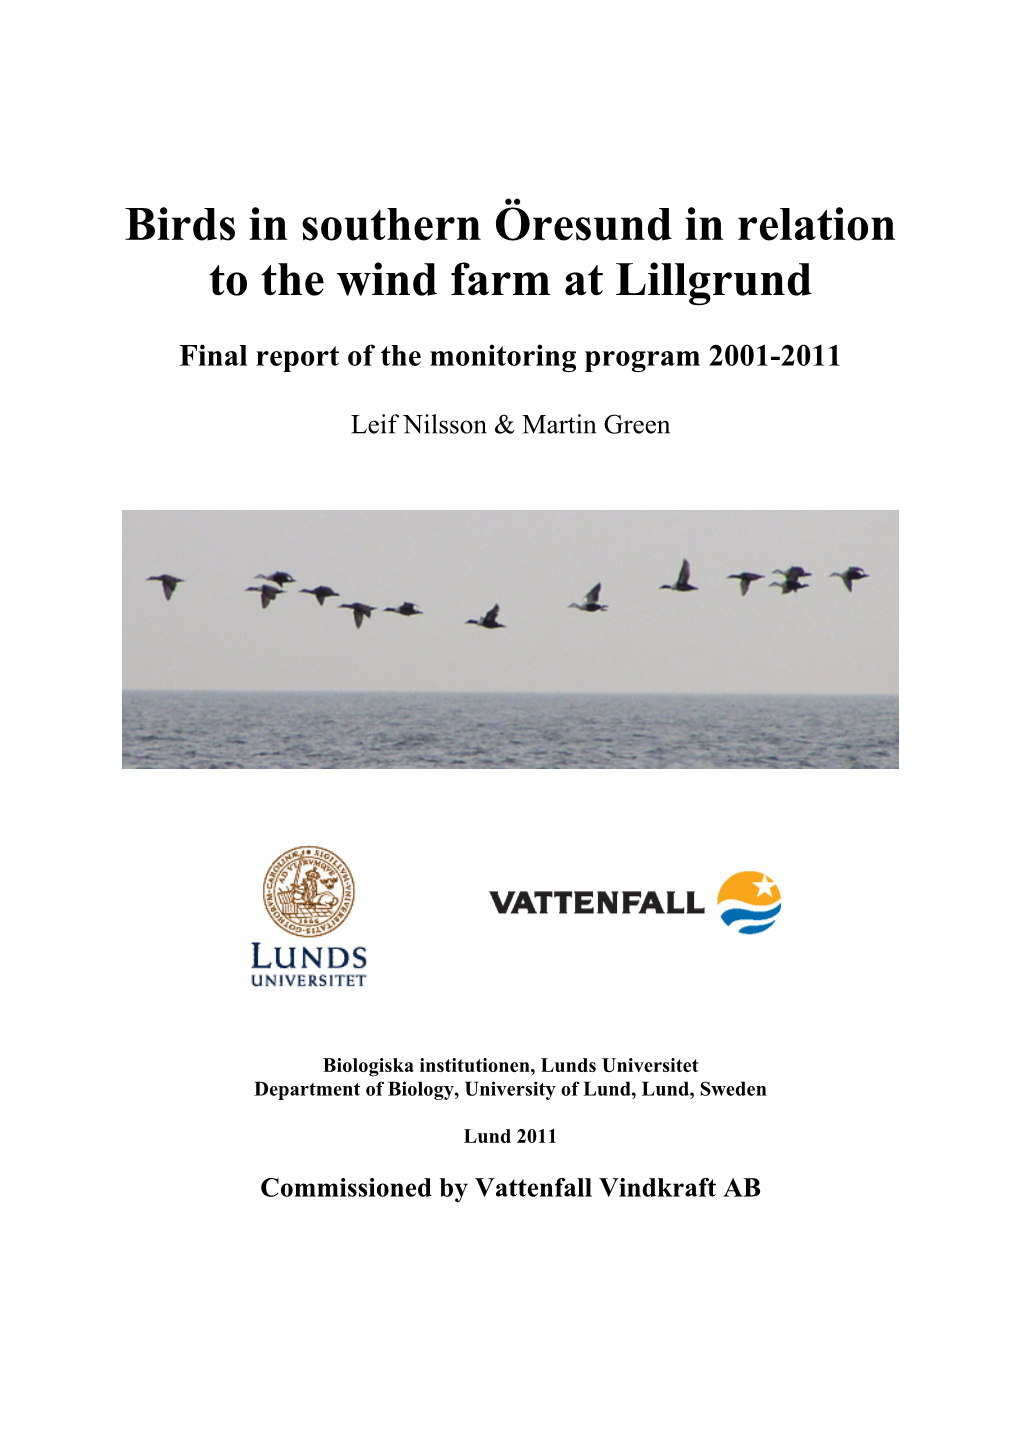 Birds in Southern Öresund in Relation to the Wind Farm at Lillgrund